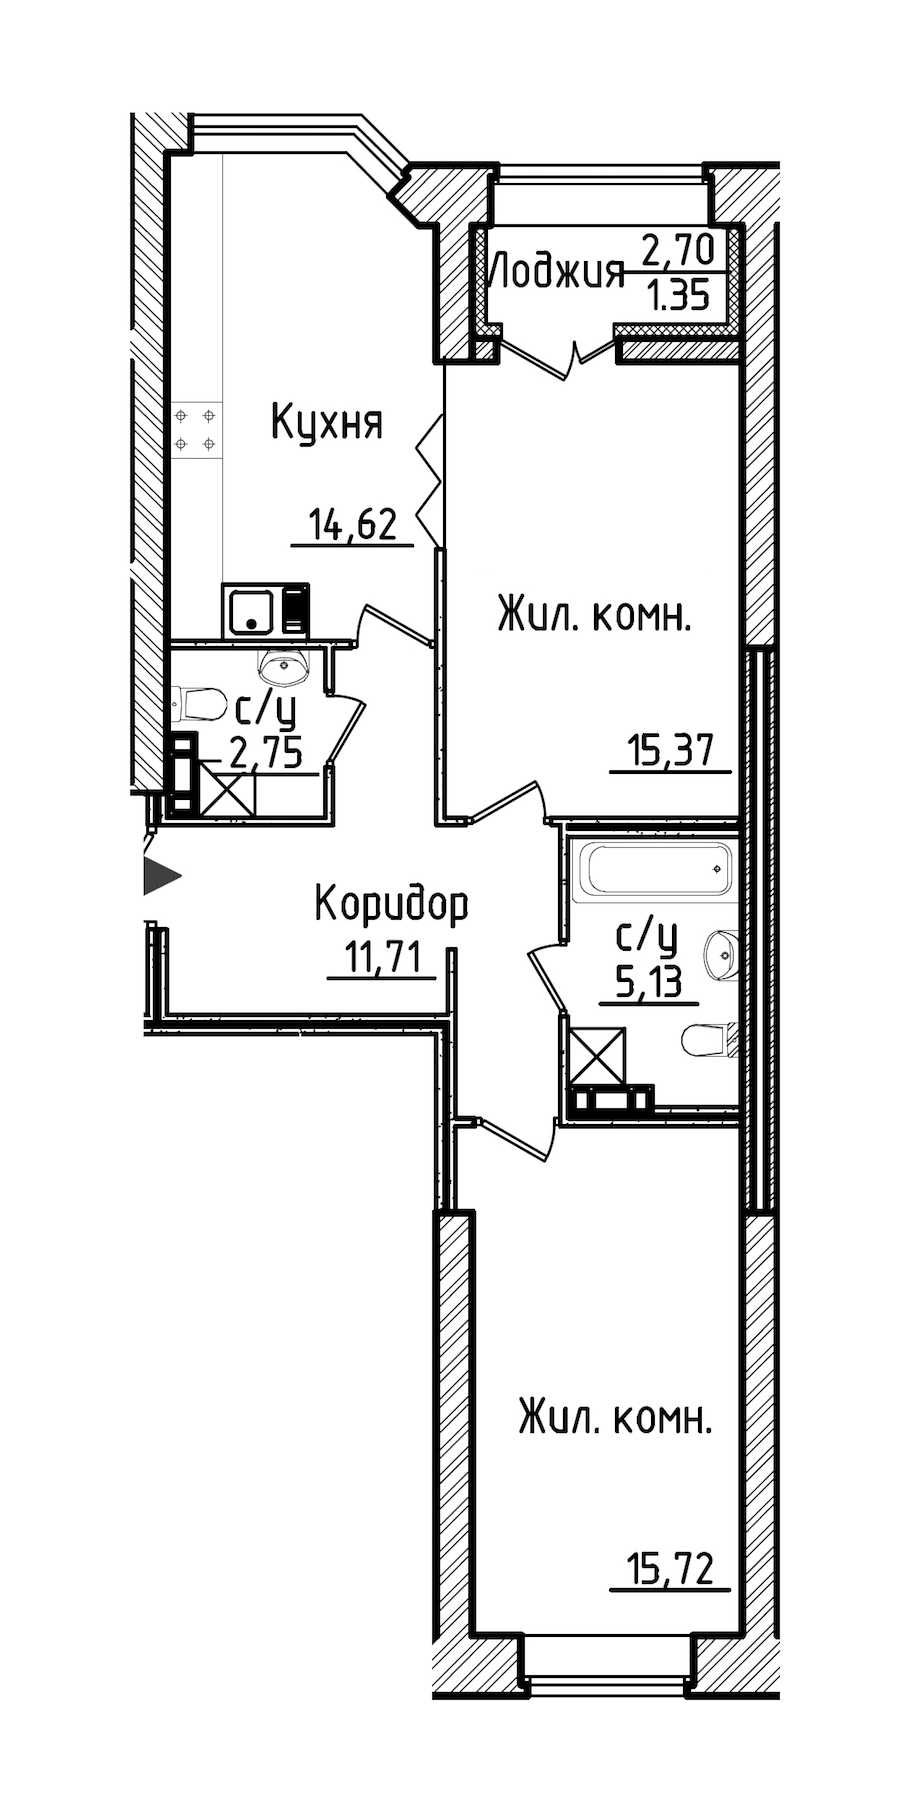 Двухкомнатная квартира в : площадь 66.65 м2 , этаж: 3 – купить в Санкт-Петербурге